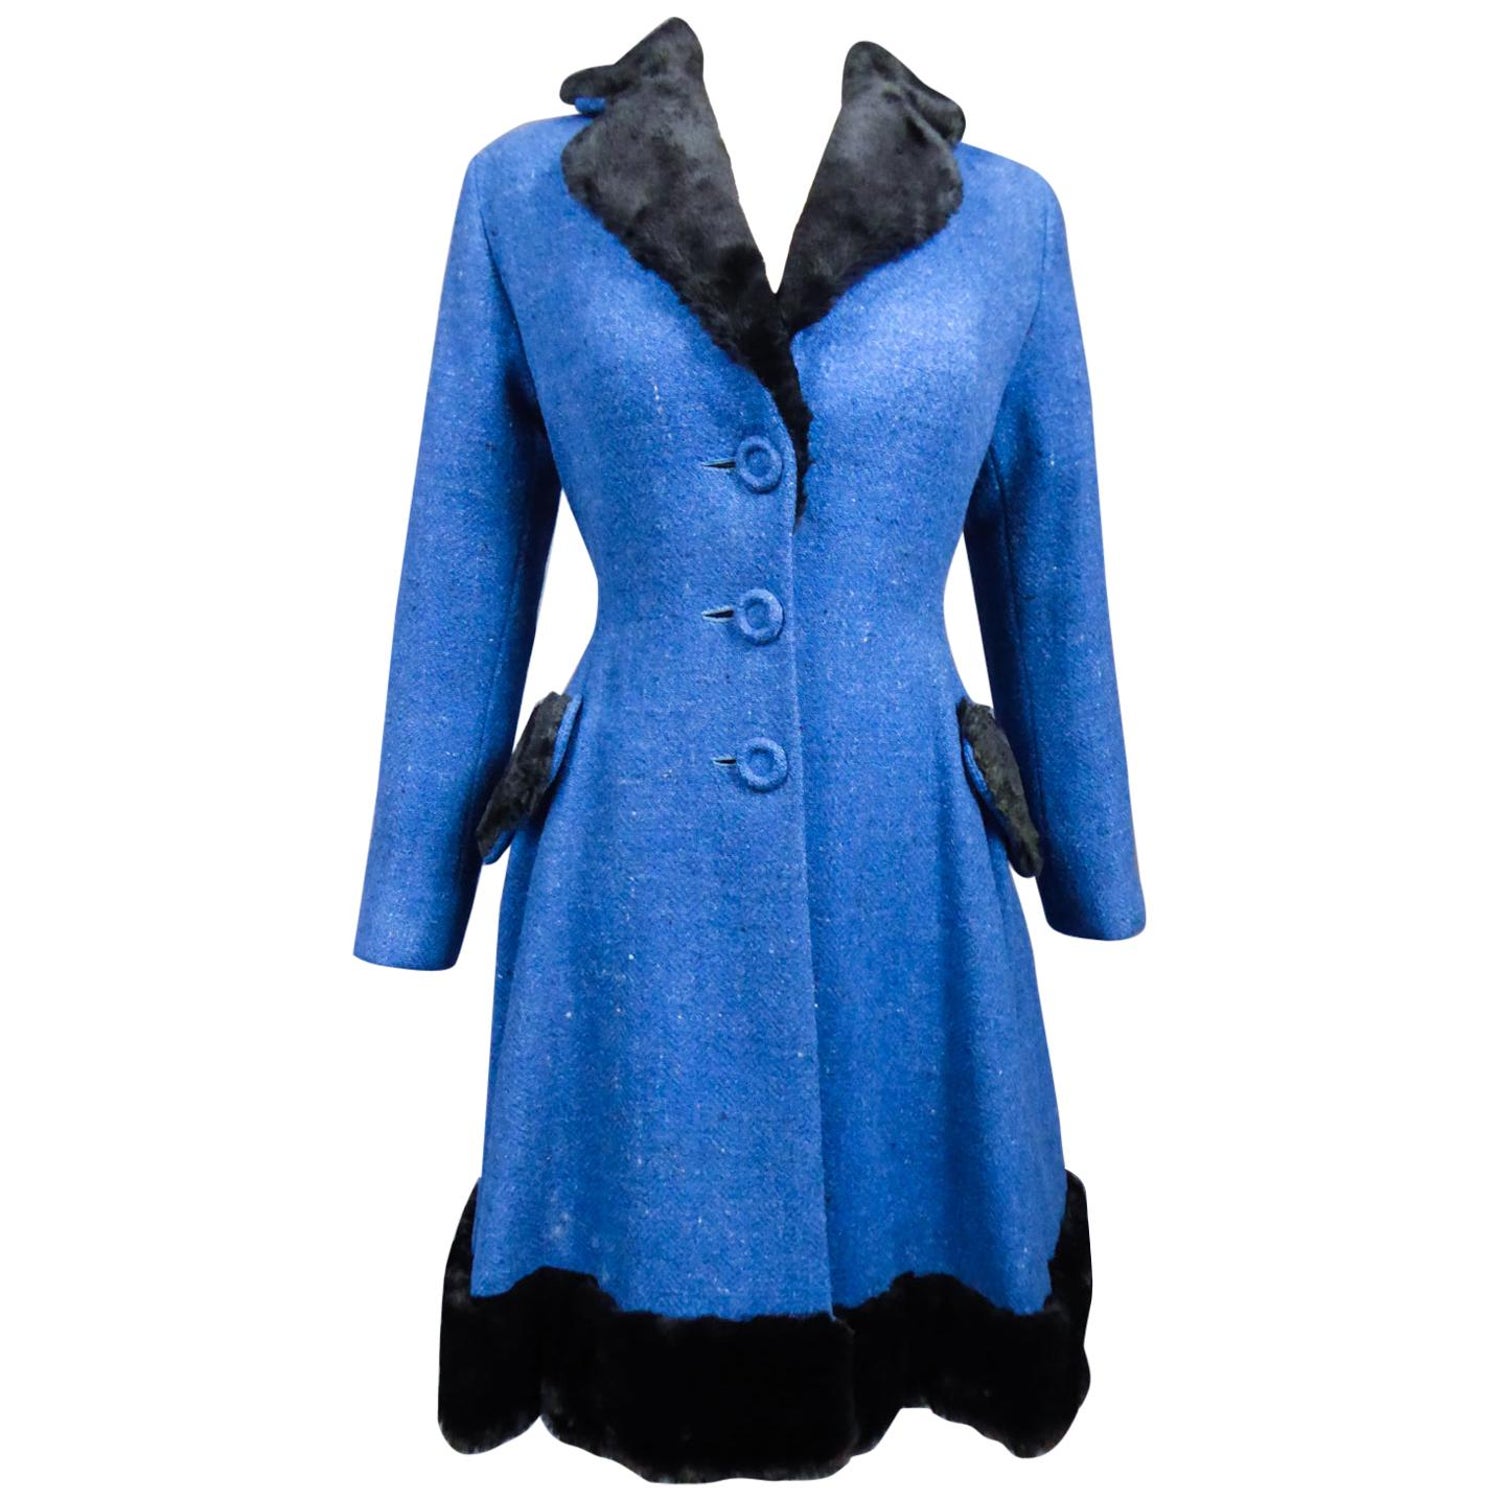 110 Blue velvet jacket ideas in 2023  velvet jacket, mens outfits, blue  velvet